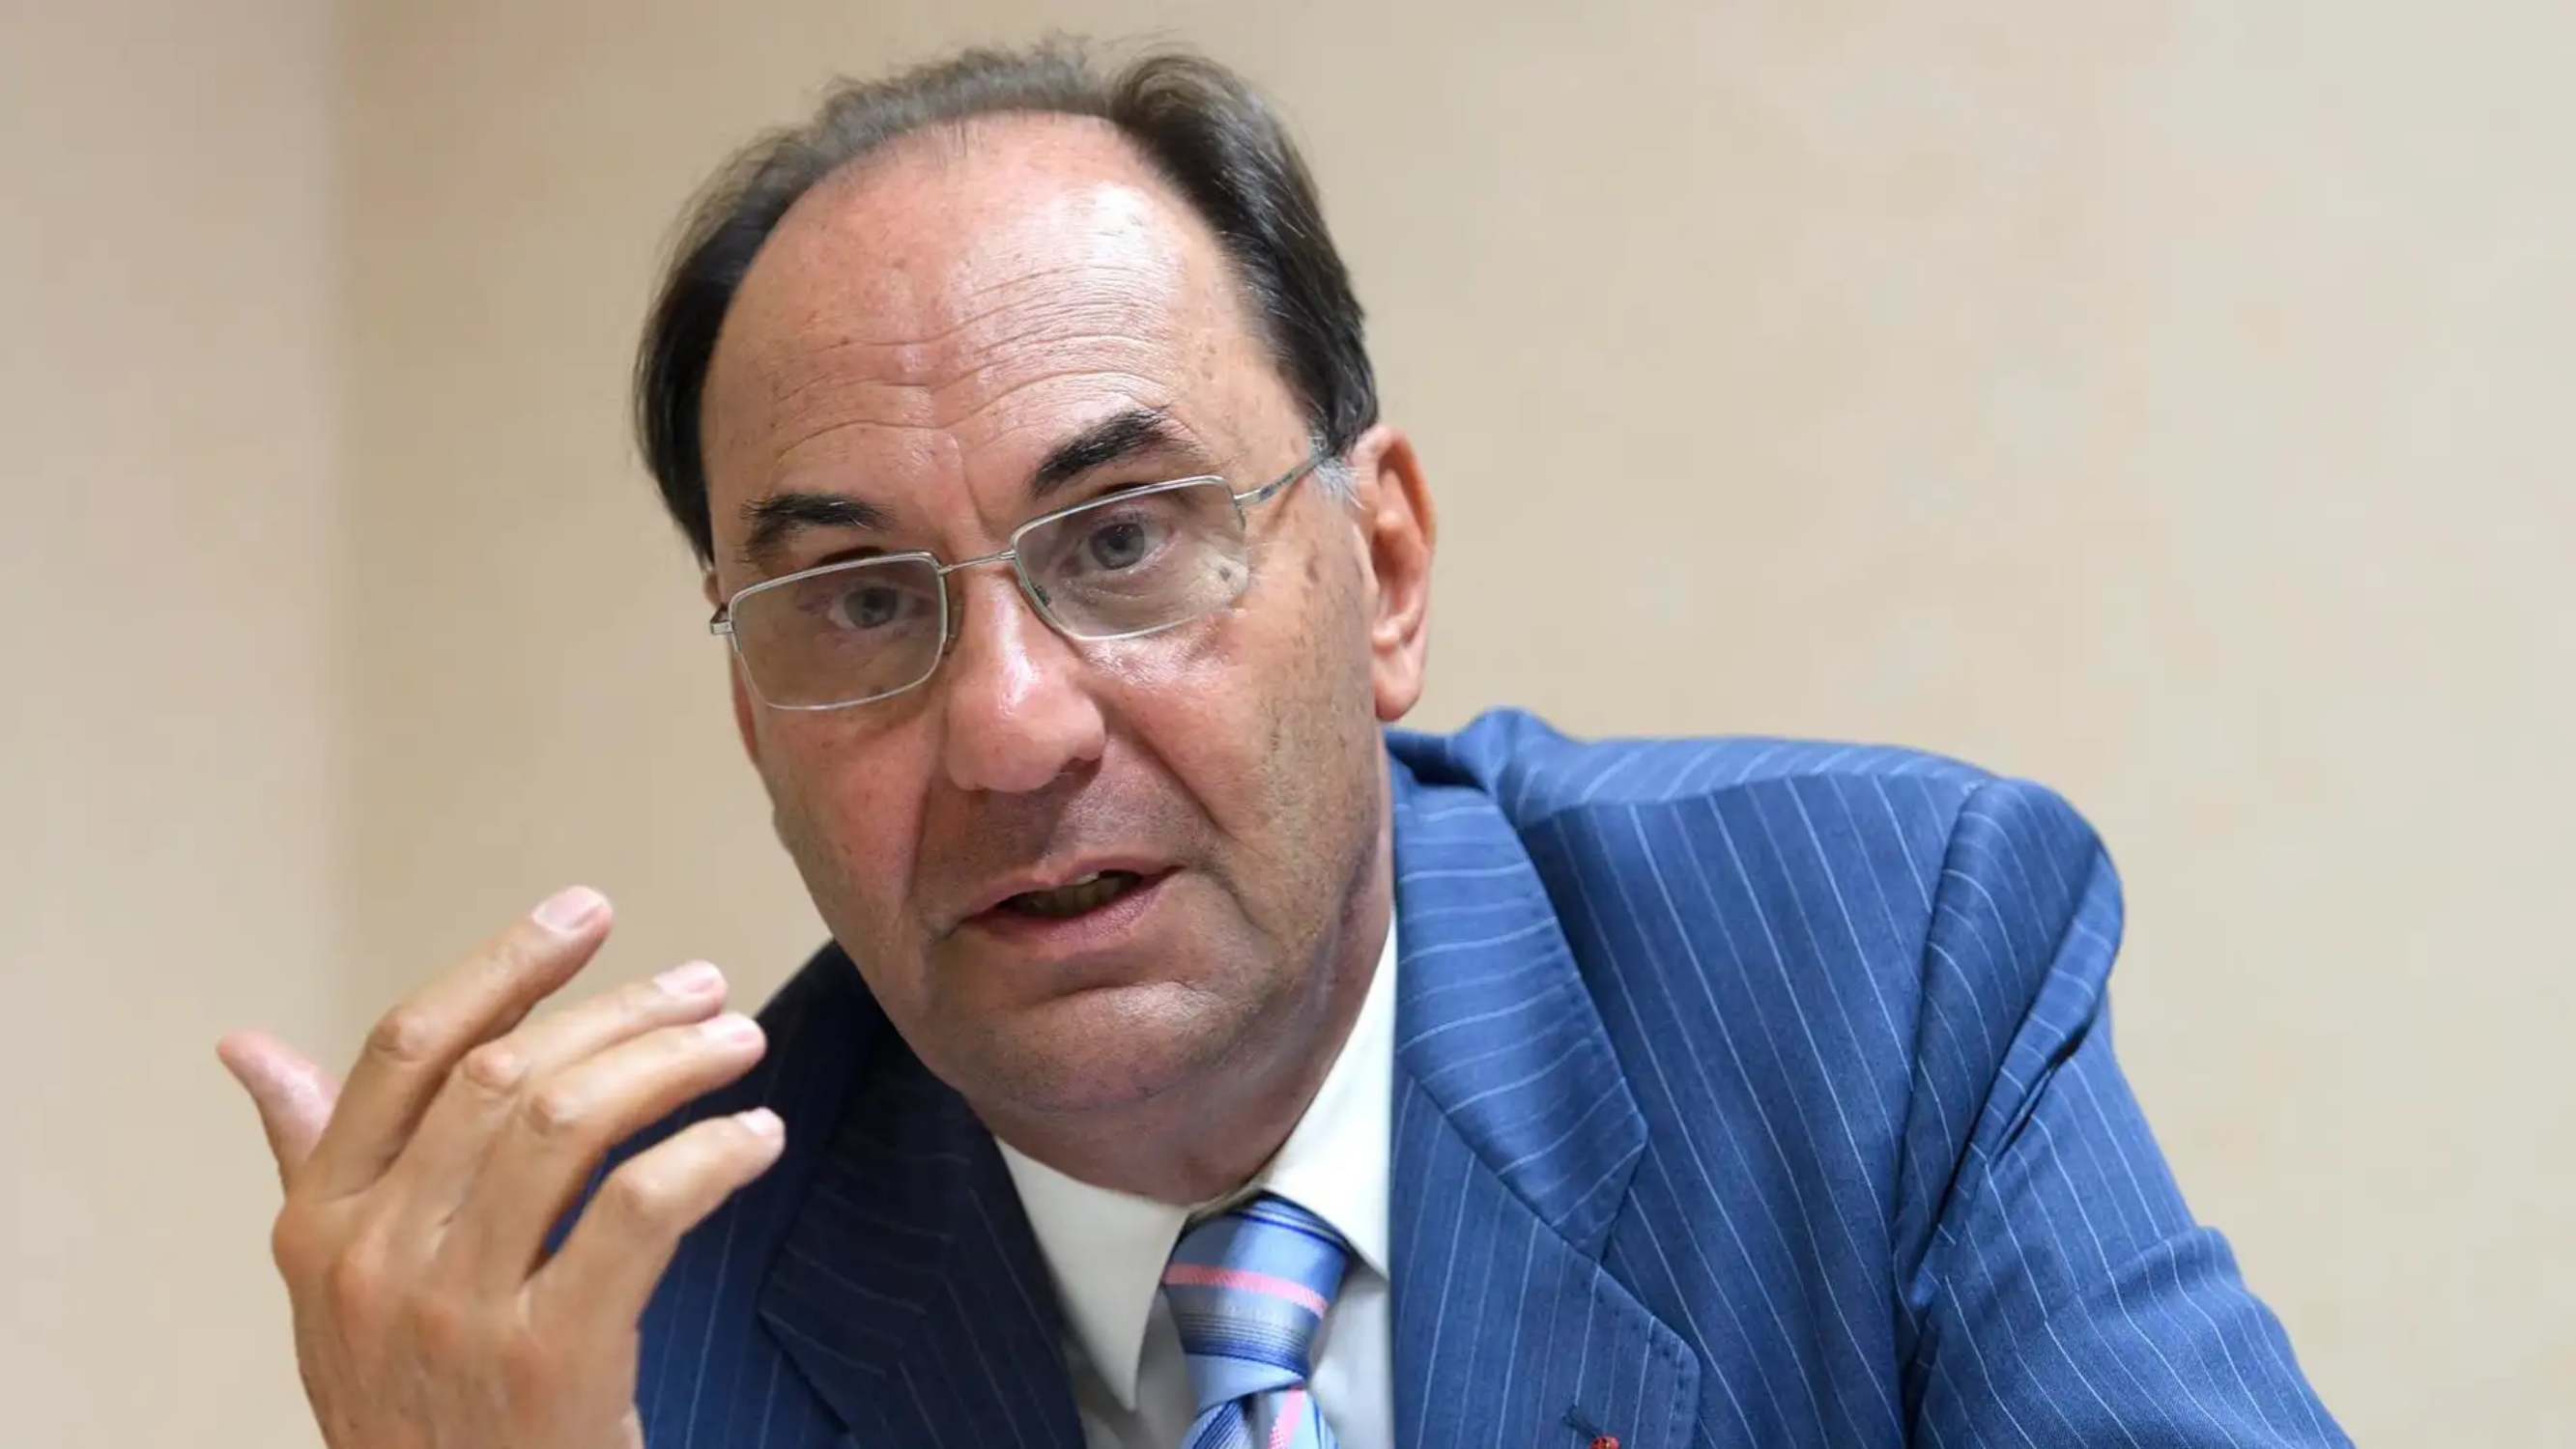 El intento de asesinato de Alejo Vidal-Quadras se investigará como terrorismo en la Audiencia Nacional